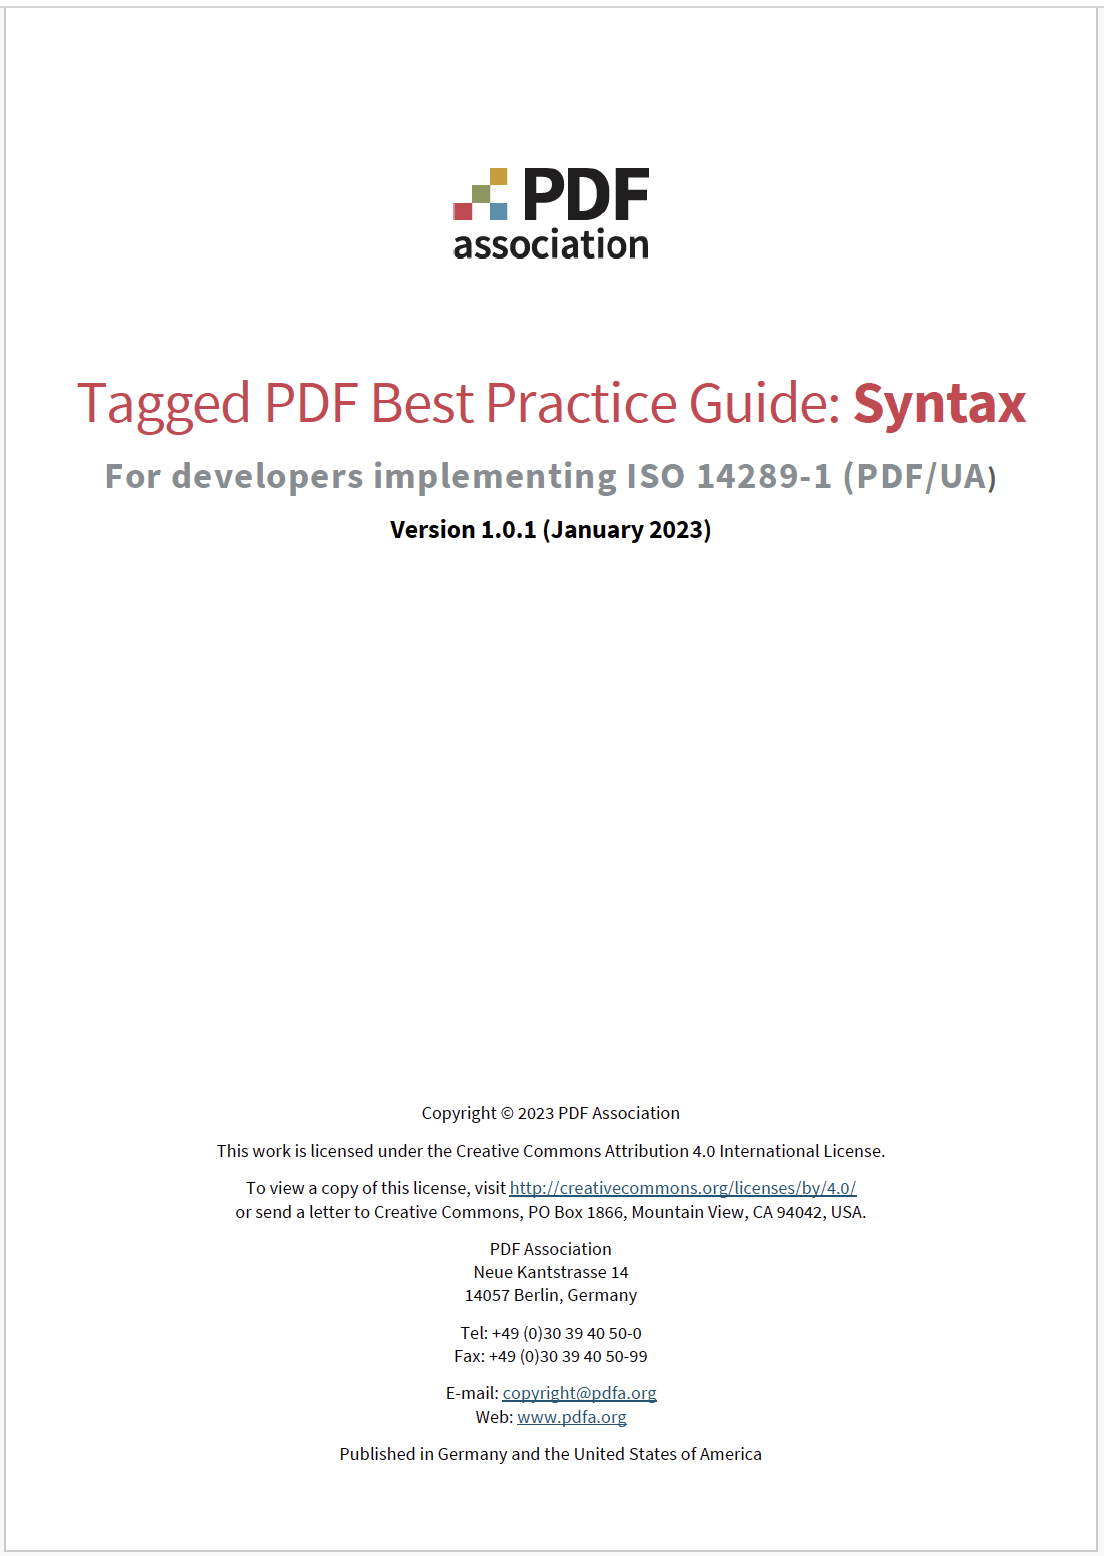 PDF Association - Tagged PDF Best Practices Guide V1.0.1, Framsida - Bild